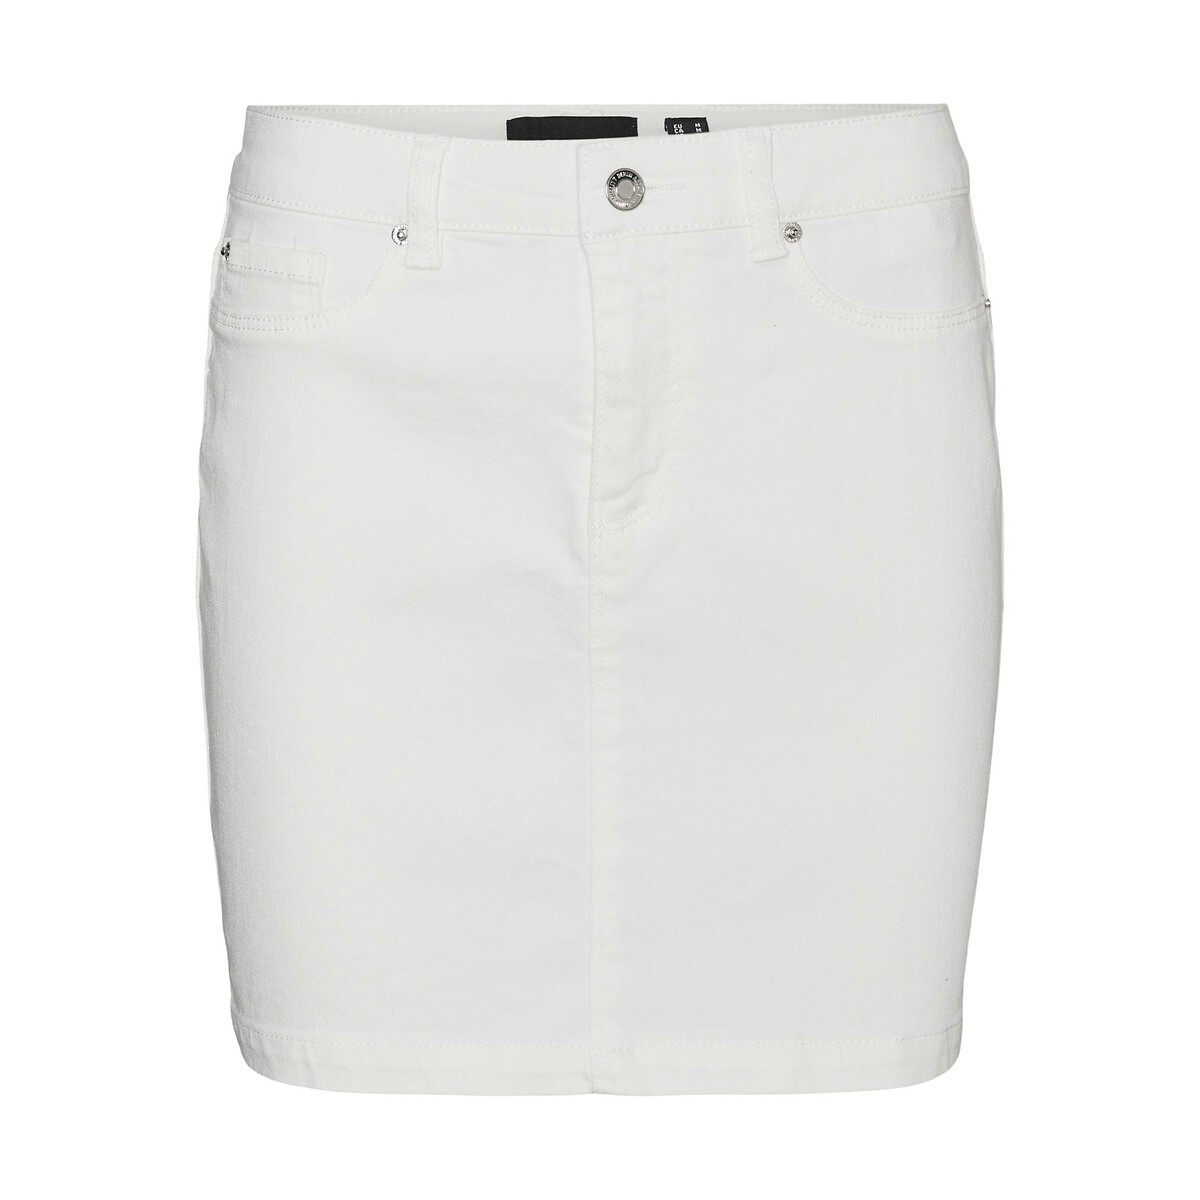 Юбка короткая из джинсовой ткани  XL белый LaRedoute, размер XL - фото 5